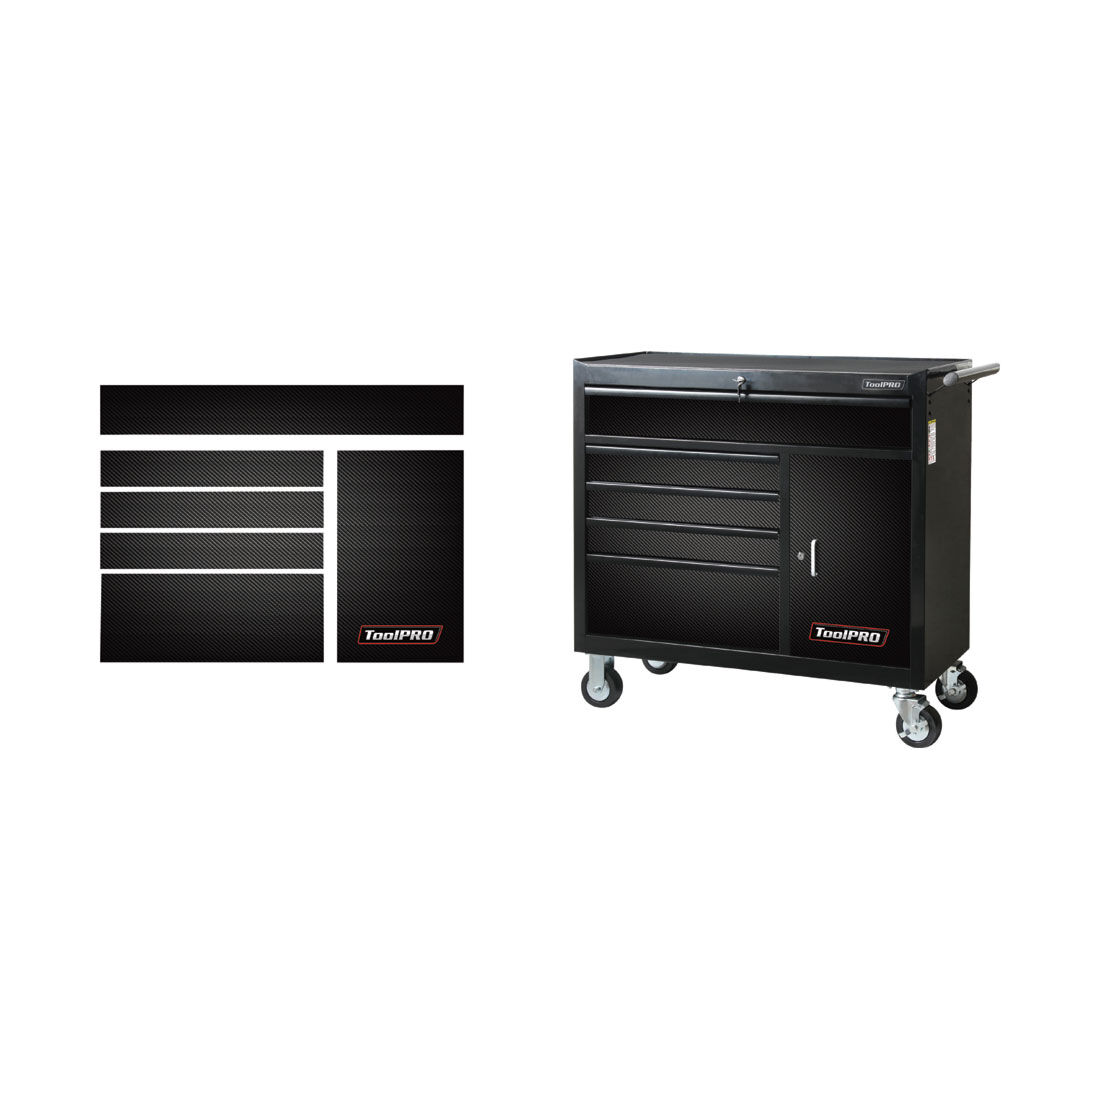 ToolPRO Tool Cabinet Magnet Fascia Set - Black Carbon Fibre, Suits 41" Cabinet, , scaau_hi-res